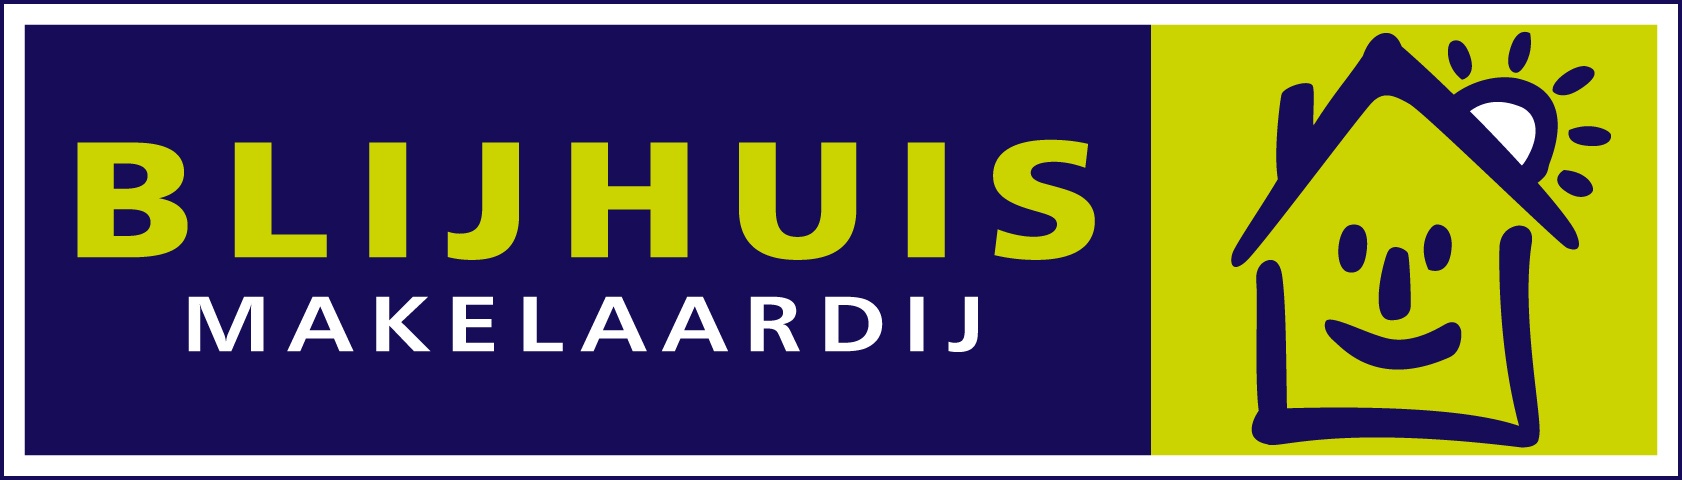 Blijhuis logo